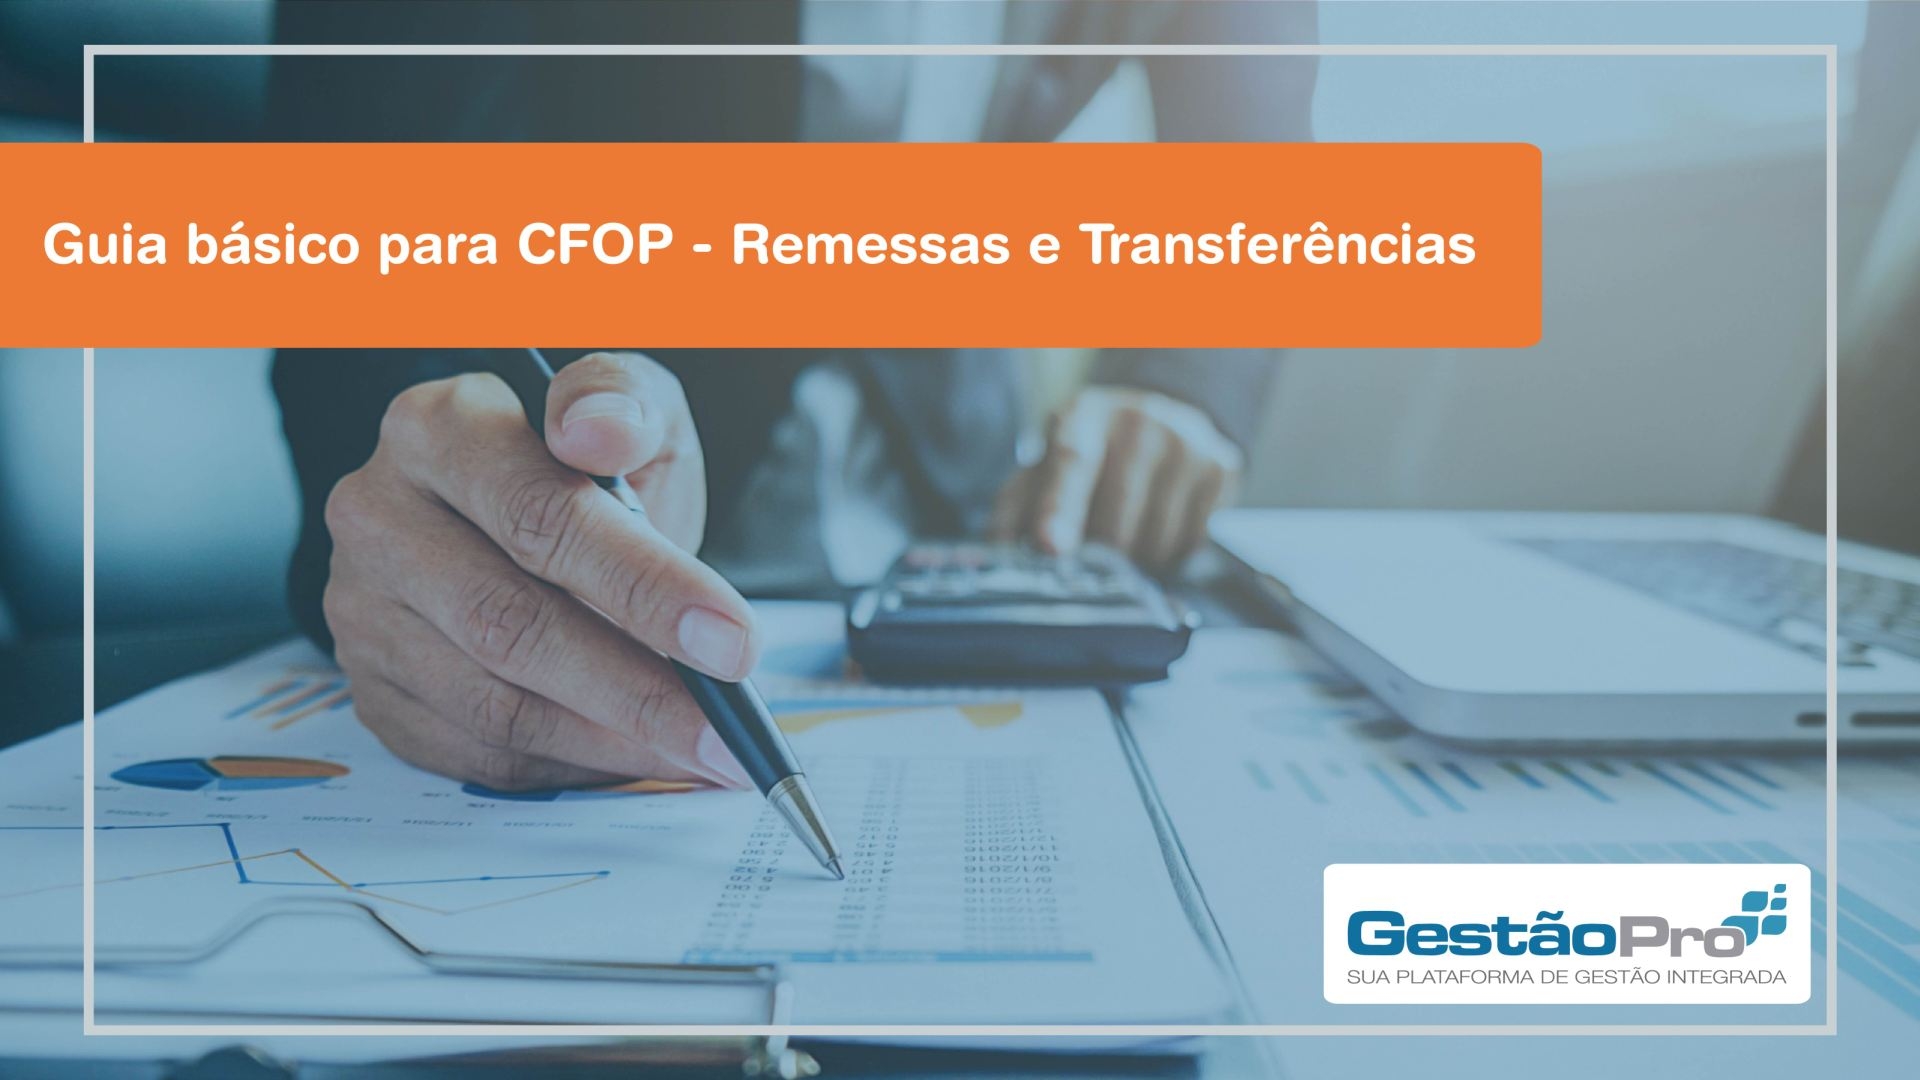 Guia básico para CFOP - Remessas e Transferências